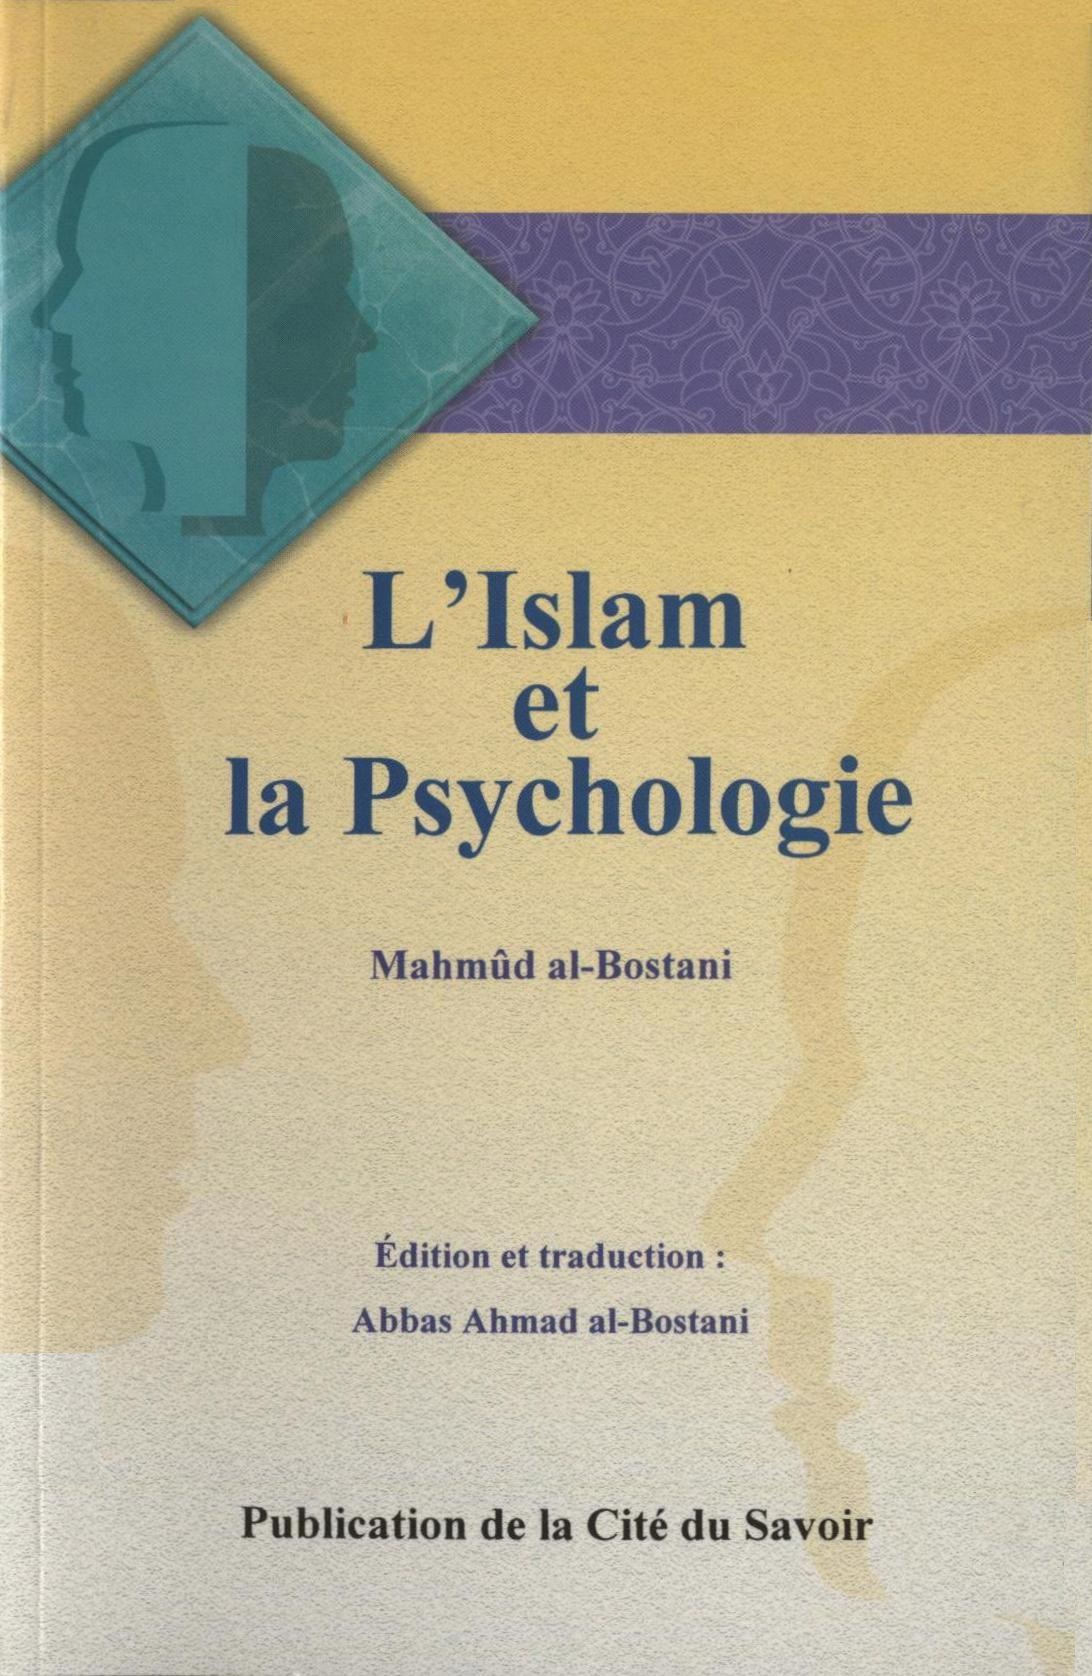 L'Islam et la Psychologie